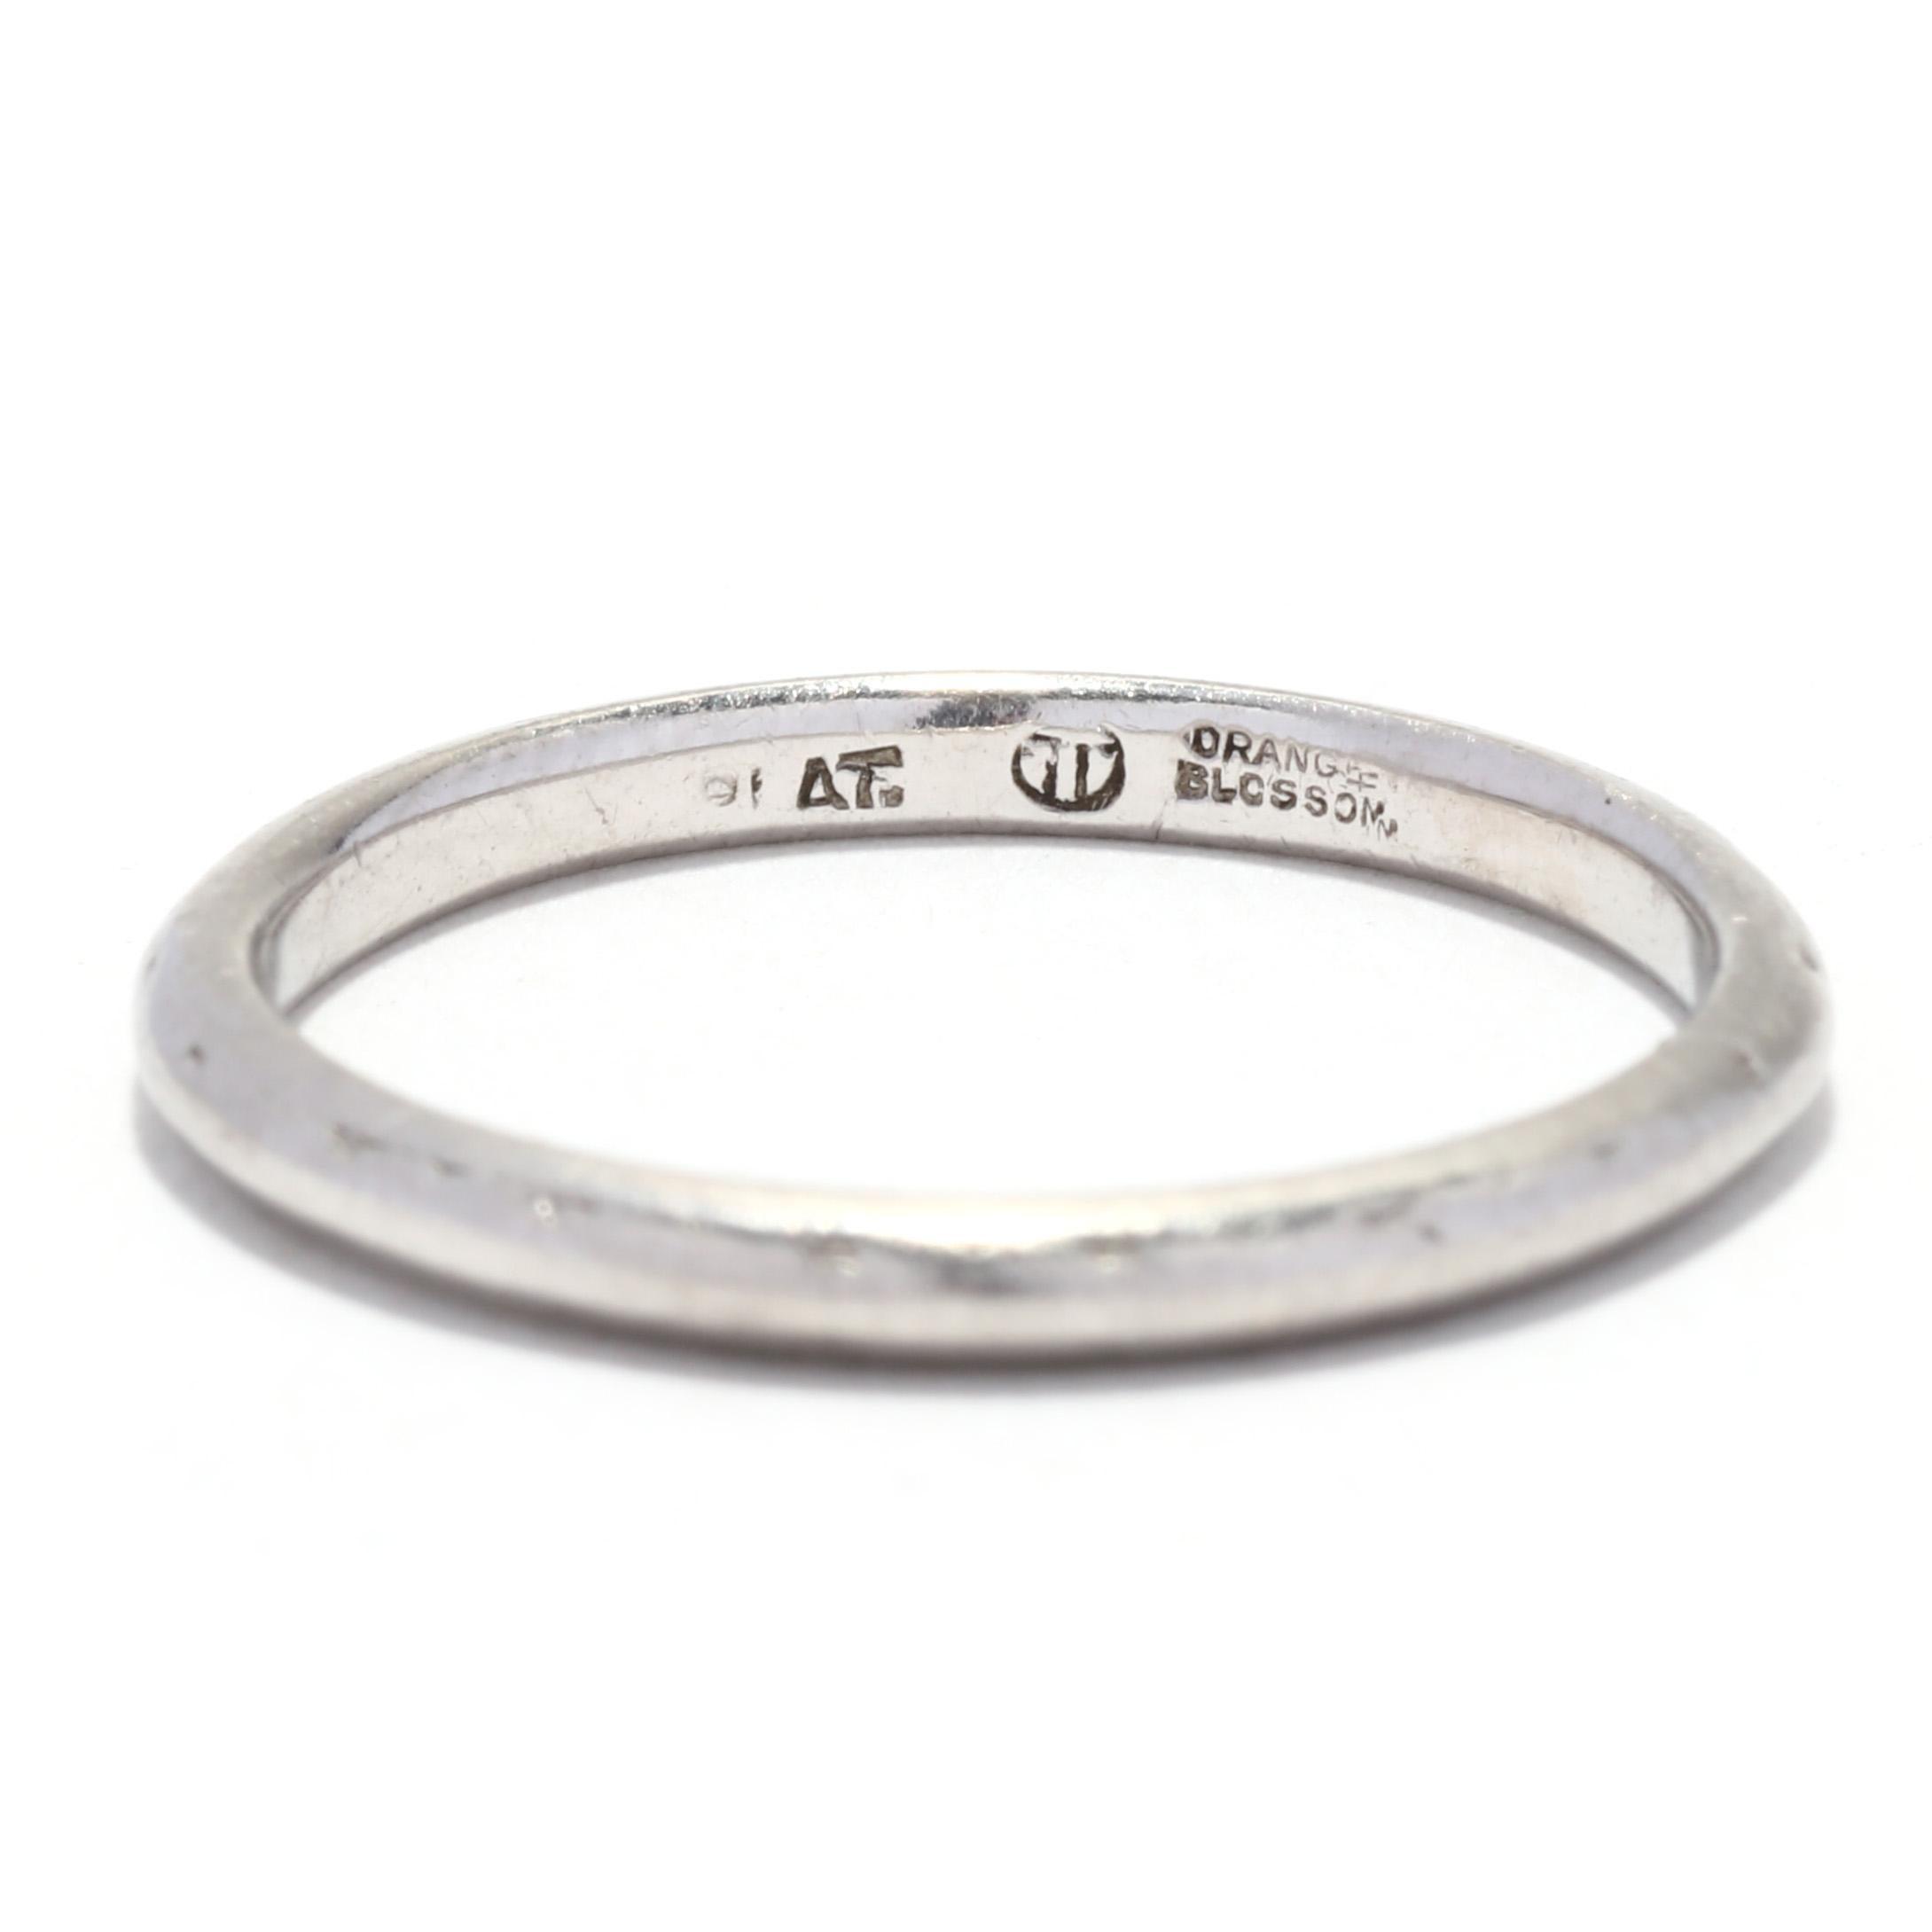 Women's or Men's Art Deco Platinum Orange Blossom Band Ring, Engraved Orange Blossom